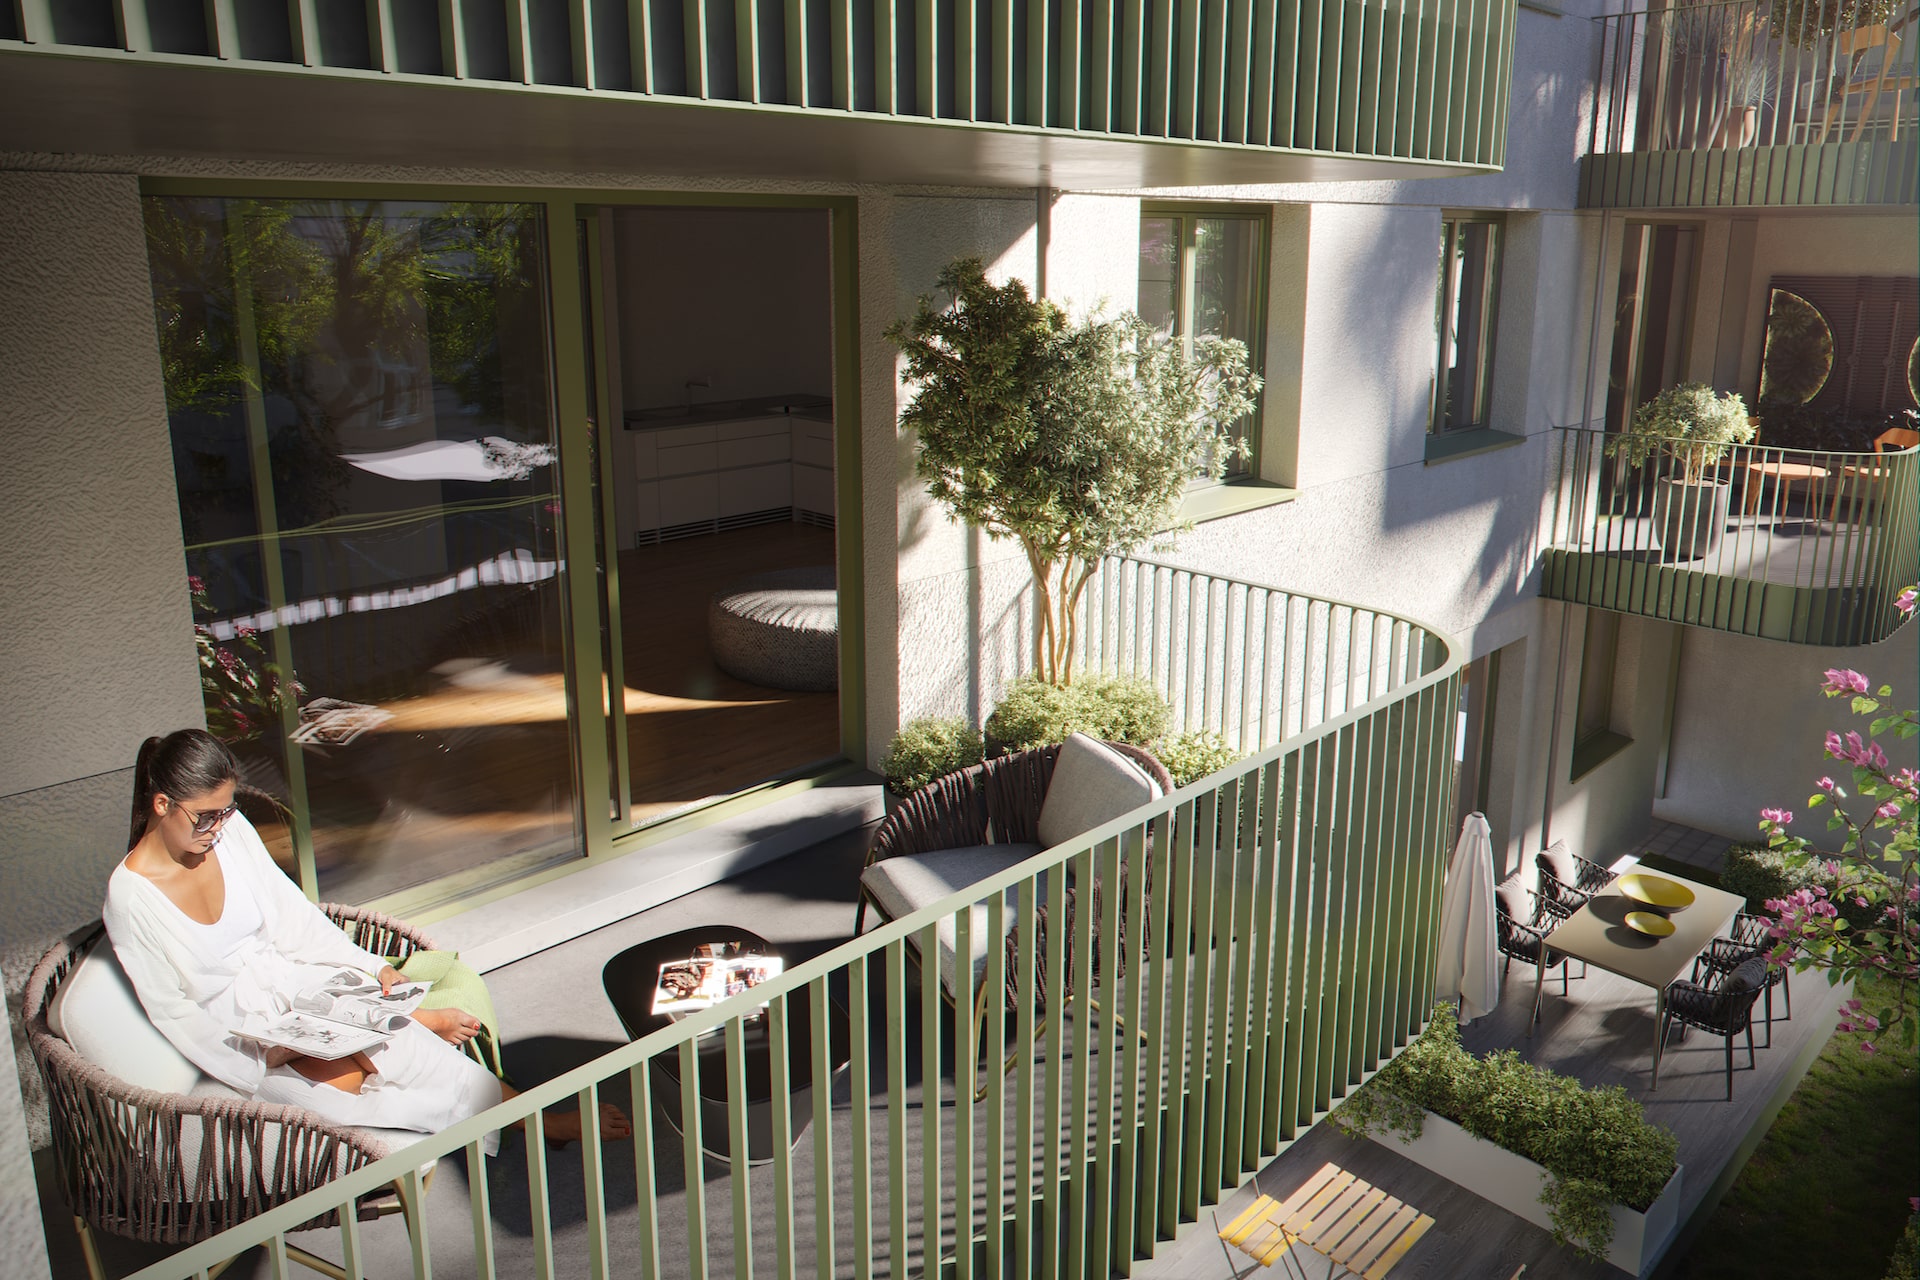 Balkone des Apartmenthauses mit Gartenmöbeln aus Holz und Bepflanzung in der Kohlgartenstraße